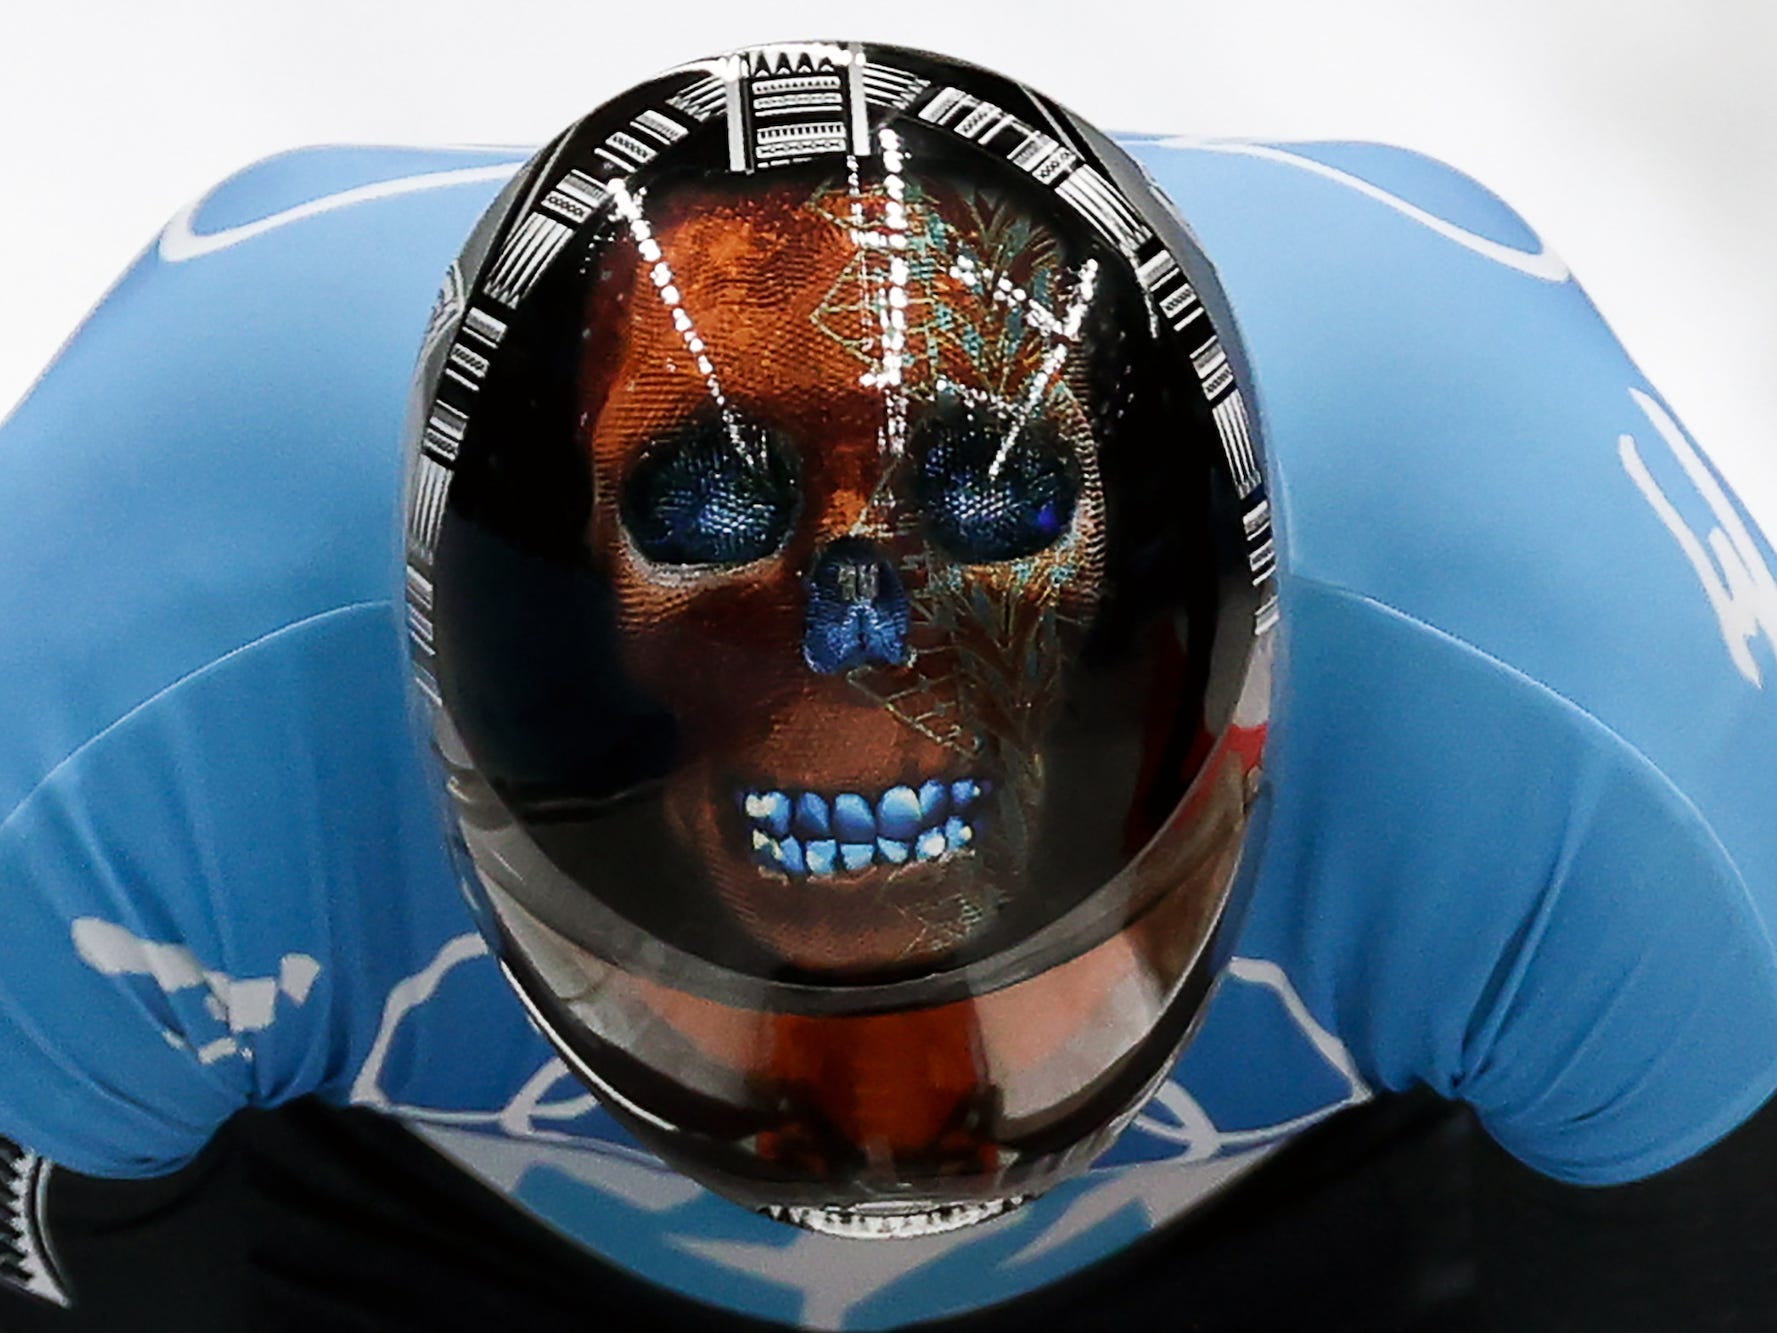 Der Helm eines Skelett-Rennfahrers zeigt bei den Olympischen Spielen einen Schädel.